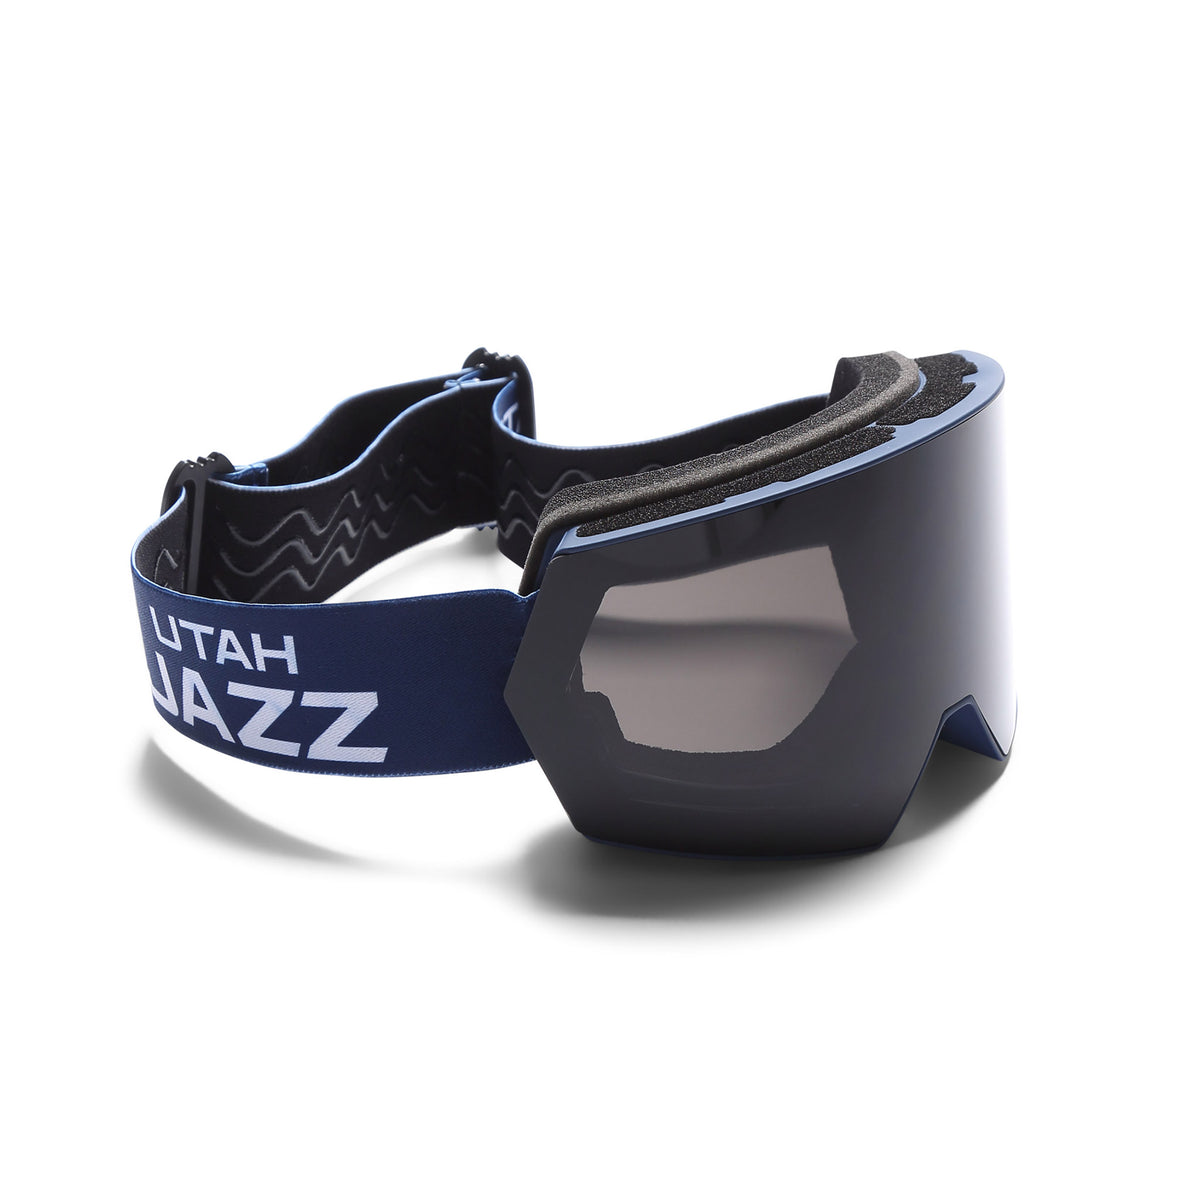 Utah Jazz Ski Goggles